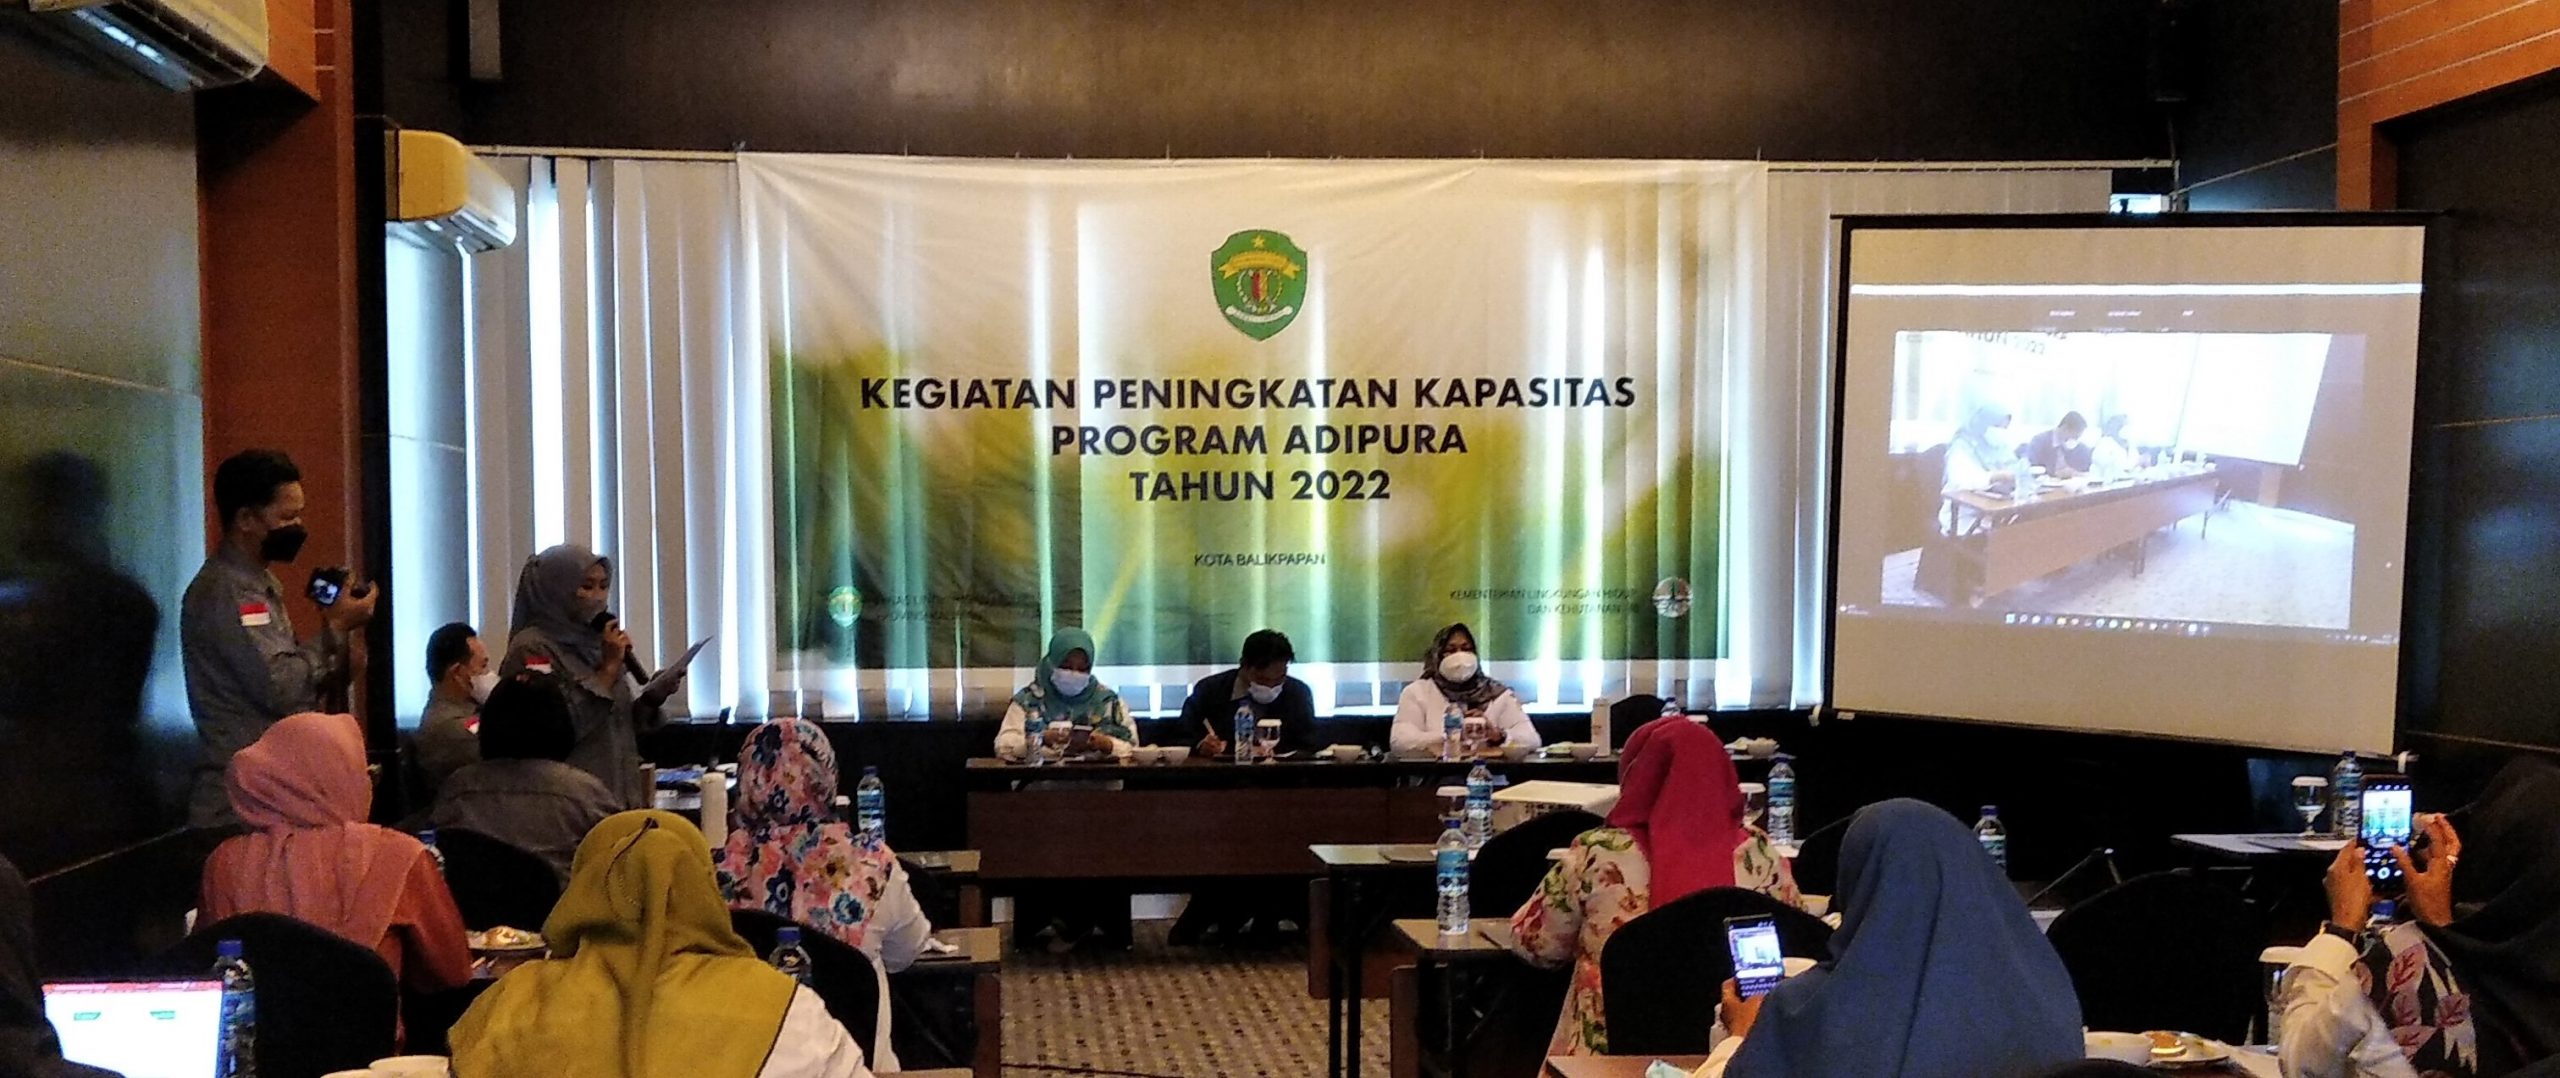 You are currently viewing Semangat P3E Kalimantan Mengawal Program Adipura Tahun 2022